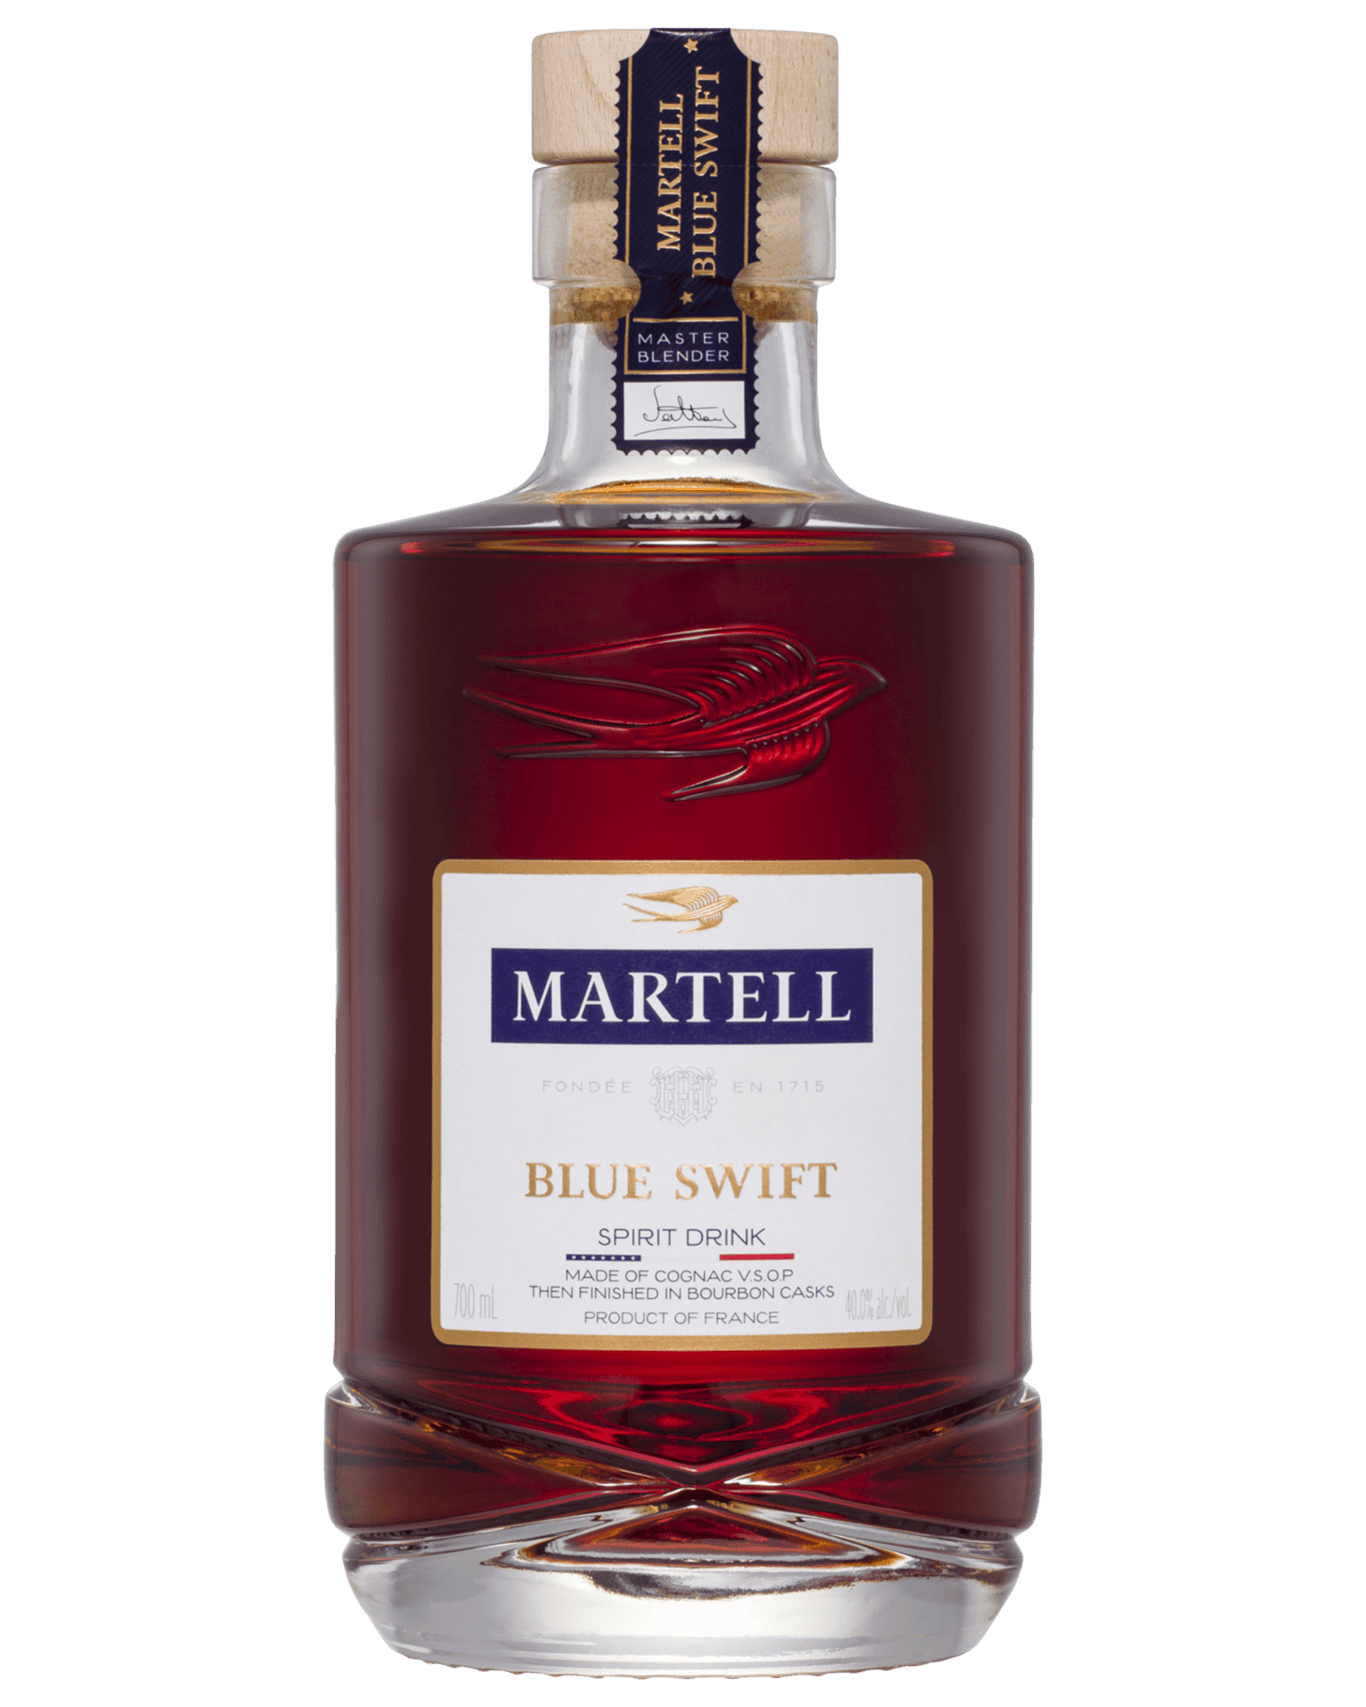 Martell Blue Swift Cognac - Discover the Unique Blend